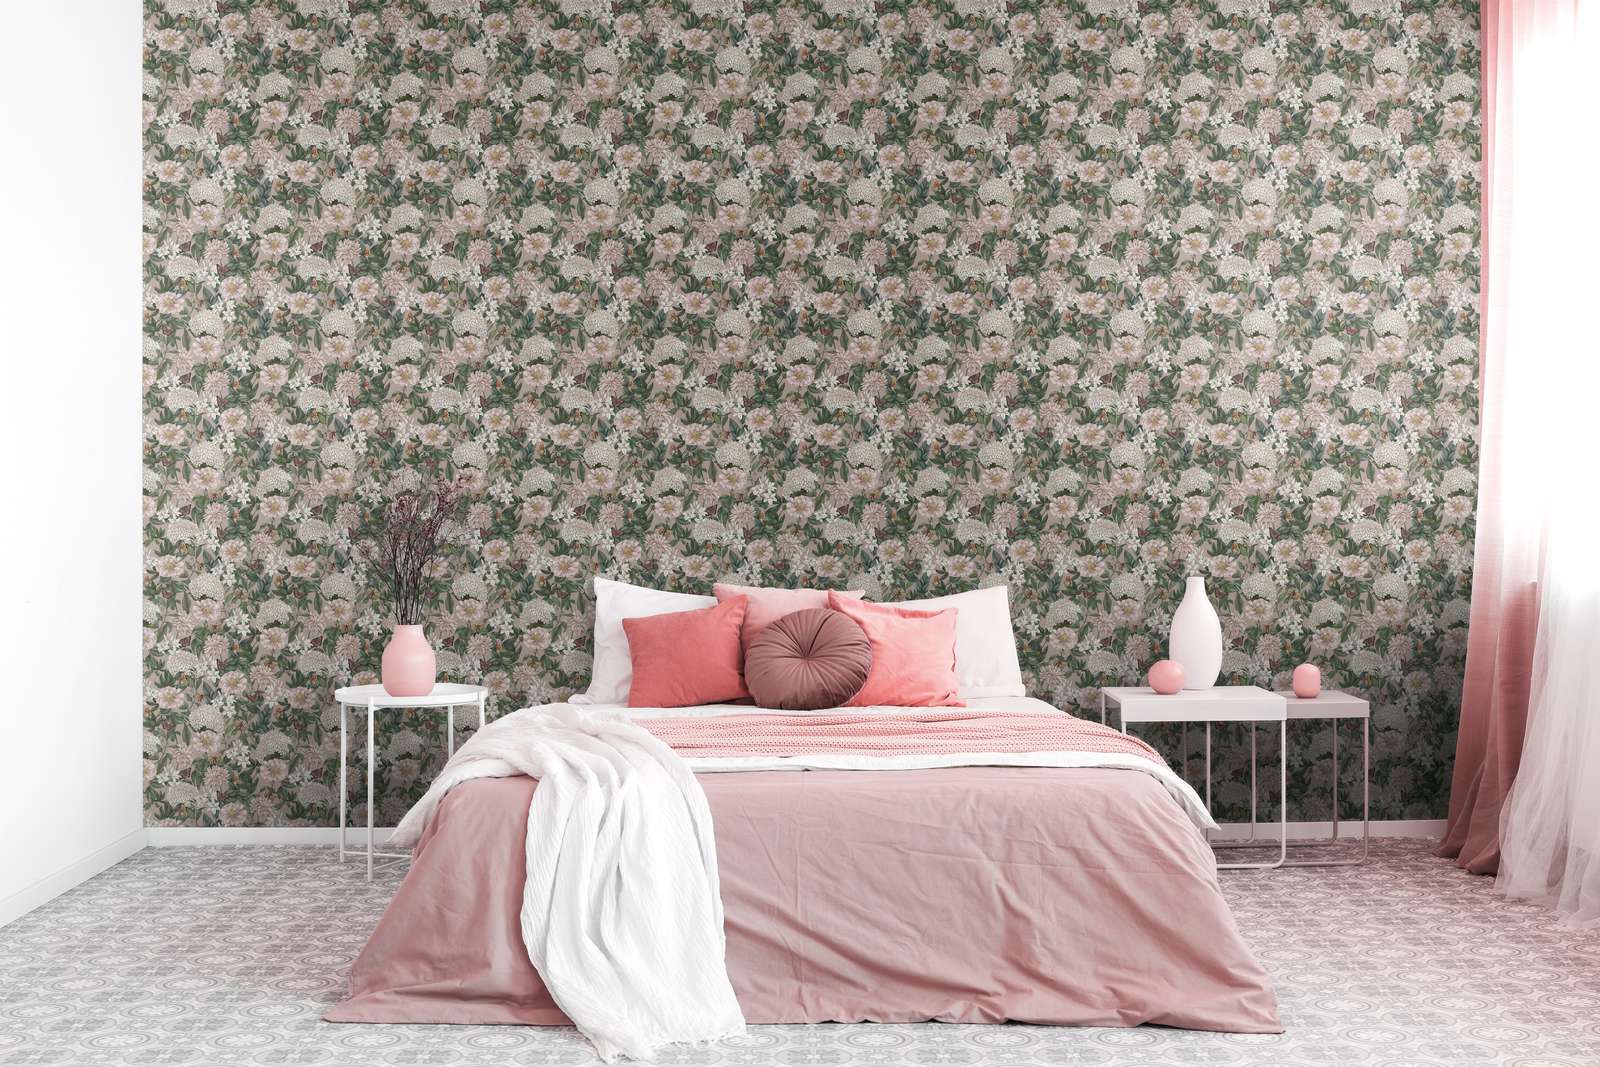             Bloemrijk behang modern met dieren & bloemen structuur mat - roze, groen, wit
        